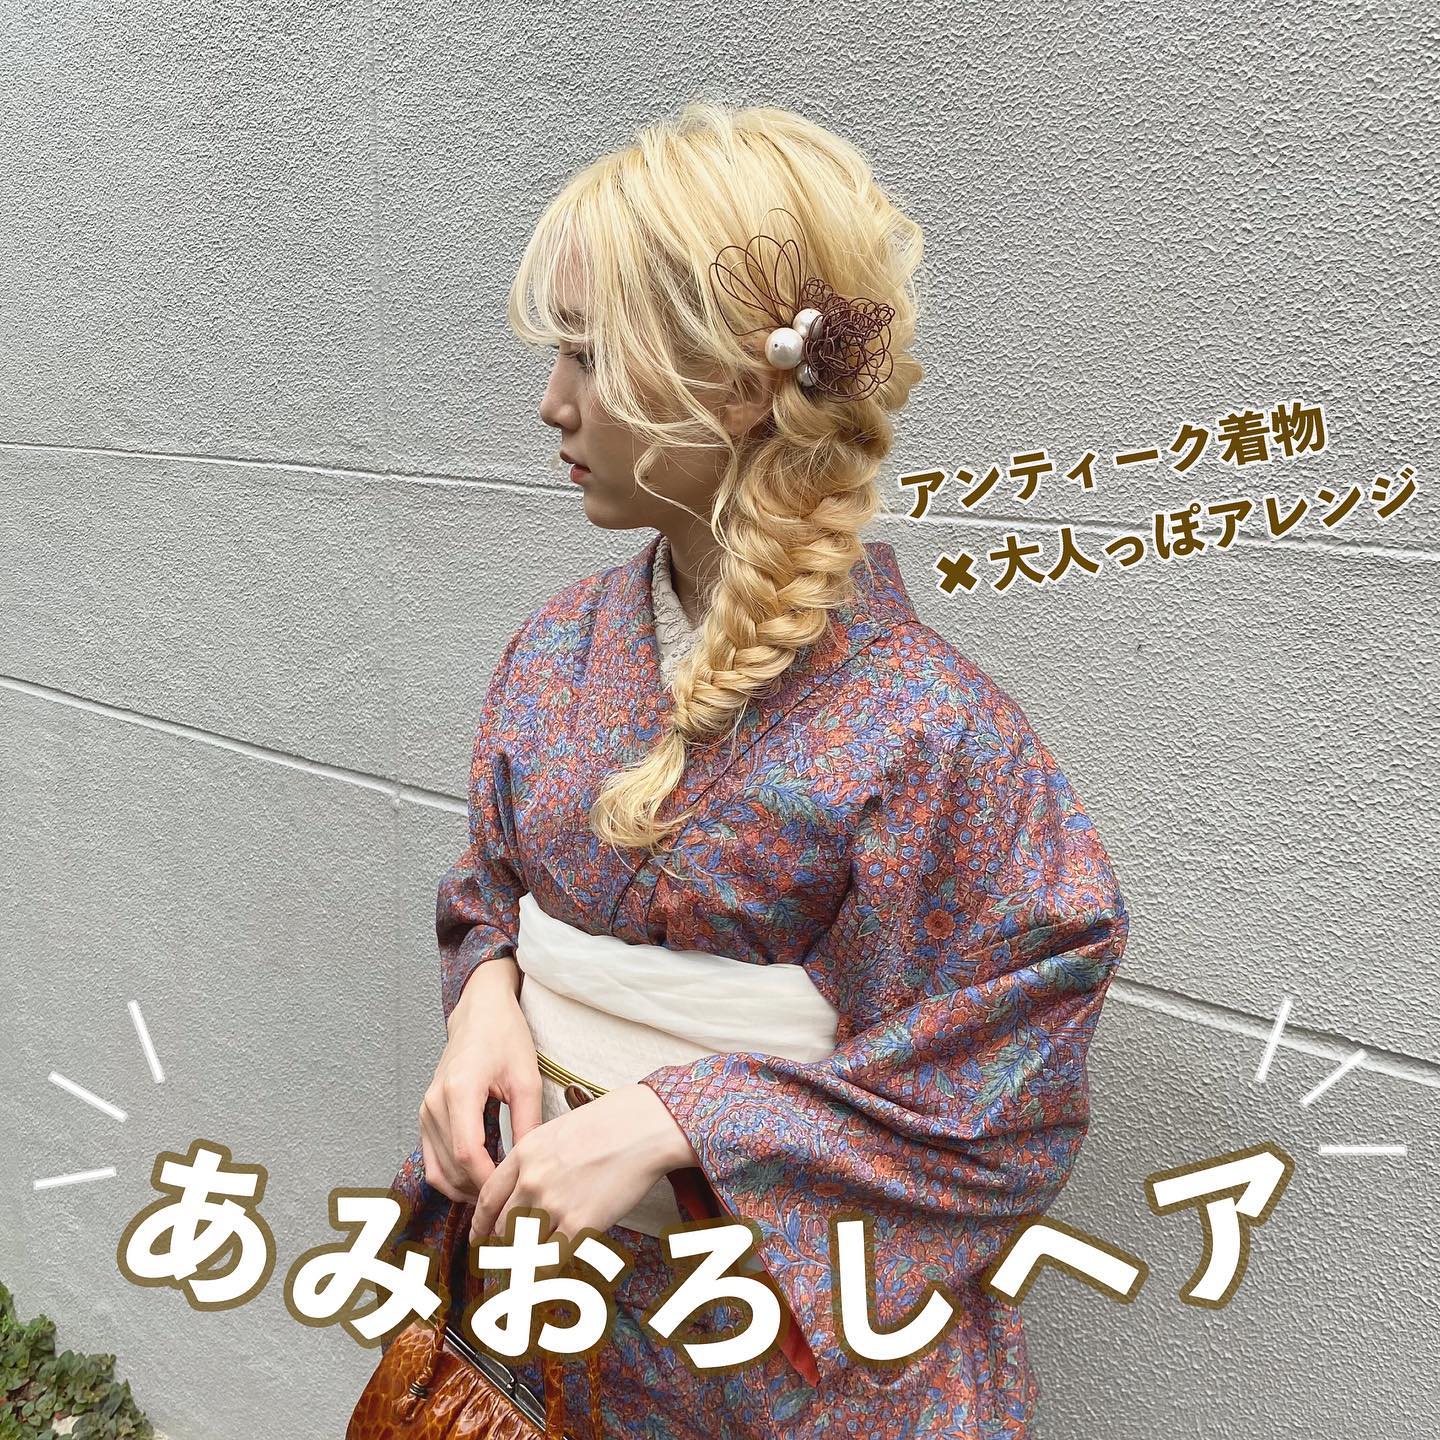 梨花和服のあみおろしヘアセットイメージ